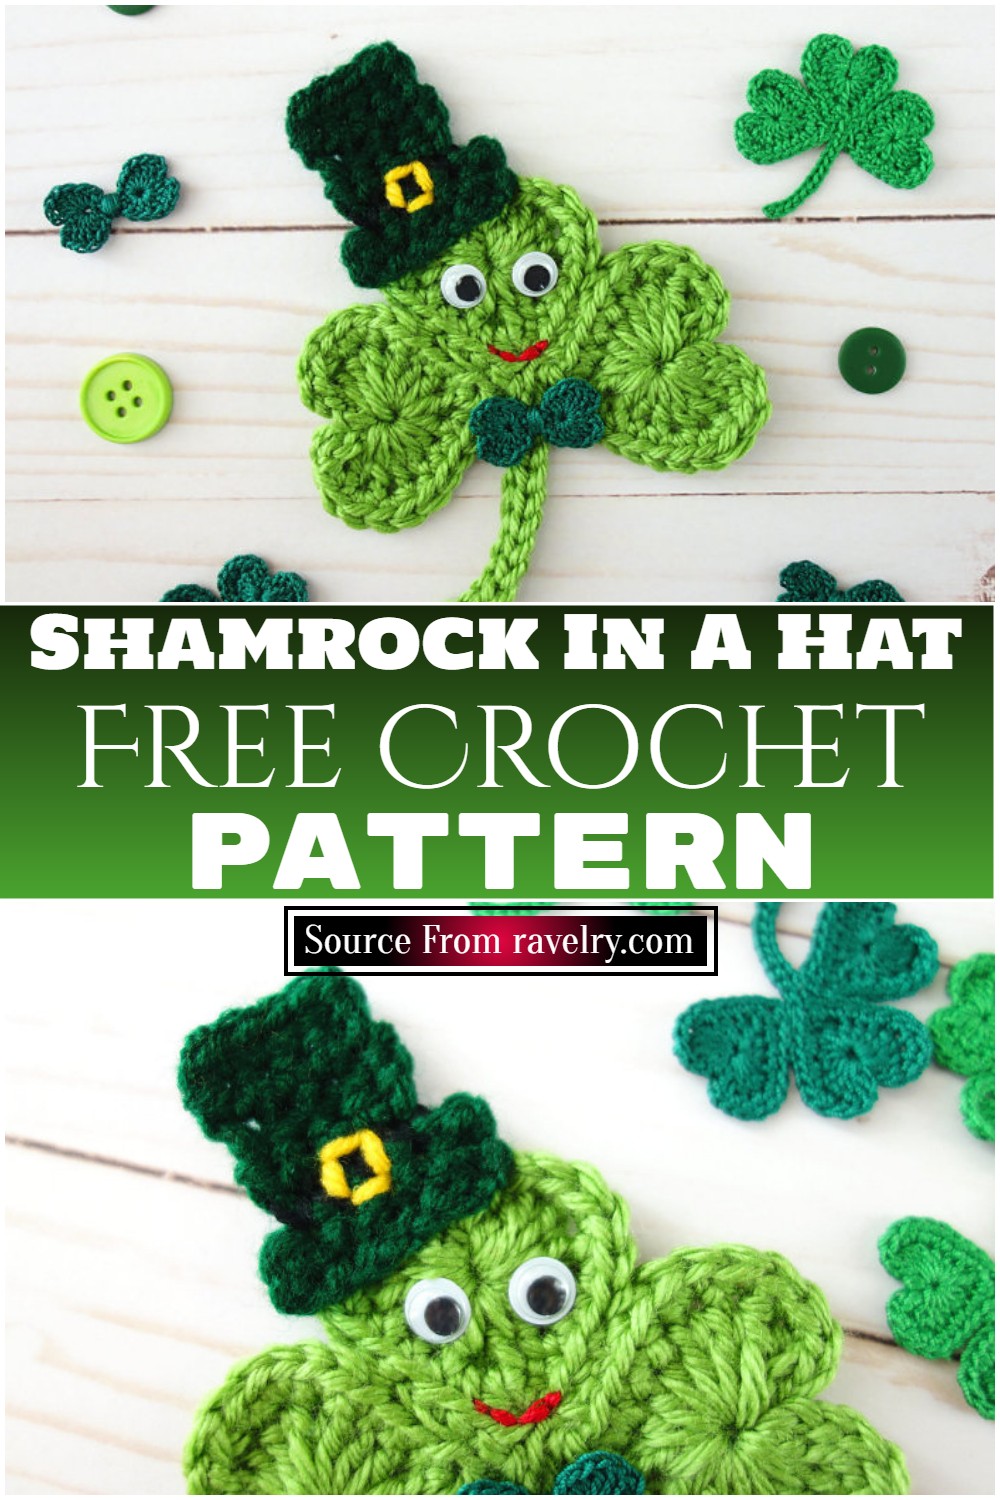 Free Crochet Shamrock In A Hat ​pattern